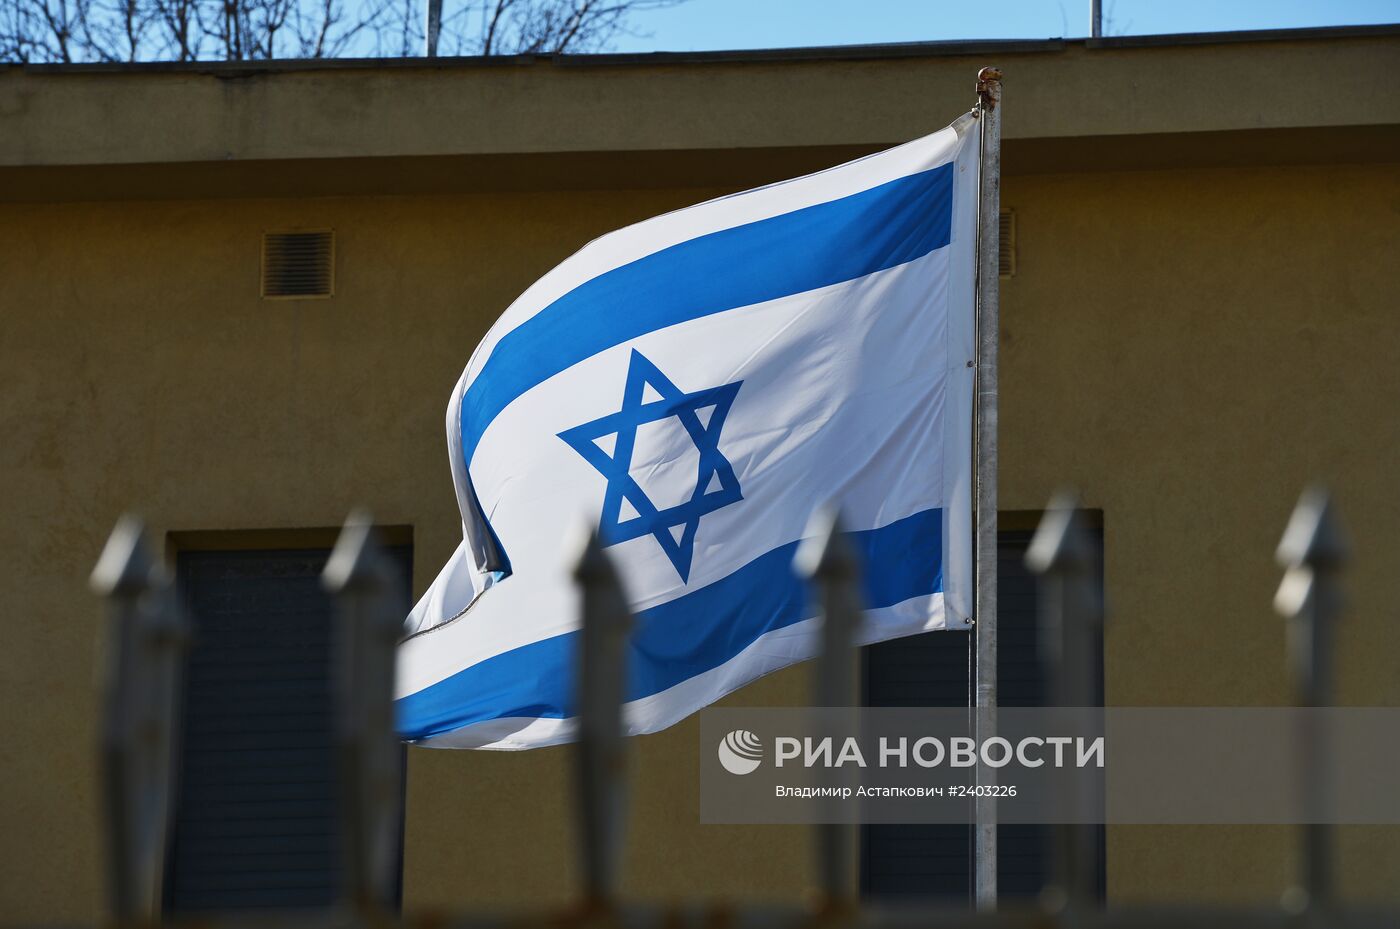 Посольство Израиля в Москве прекратило работу из-за забастовки дипломатов